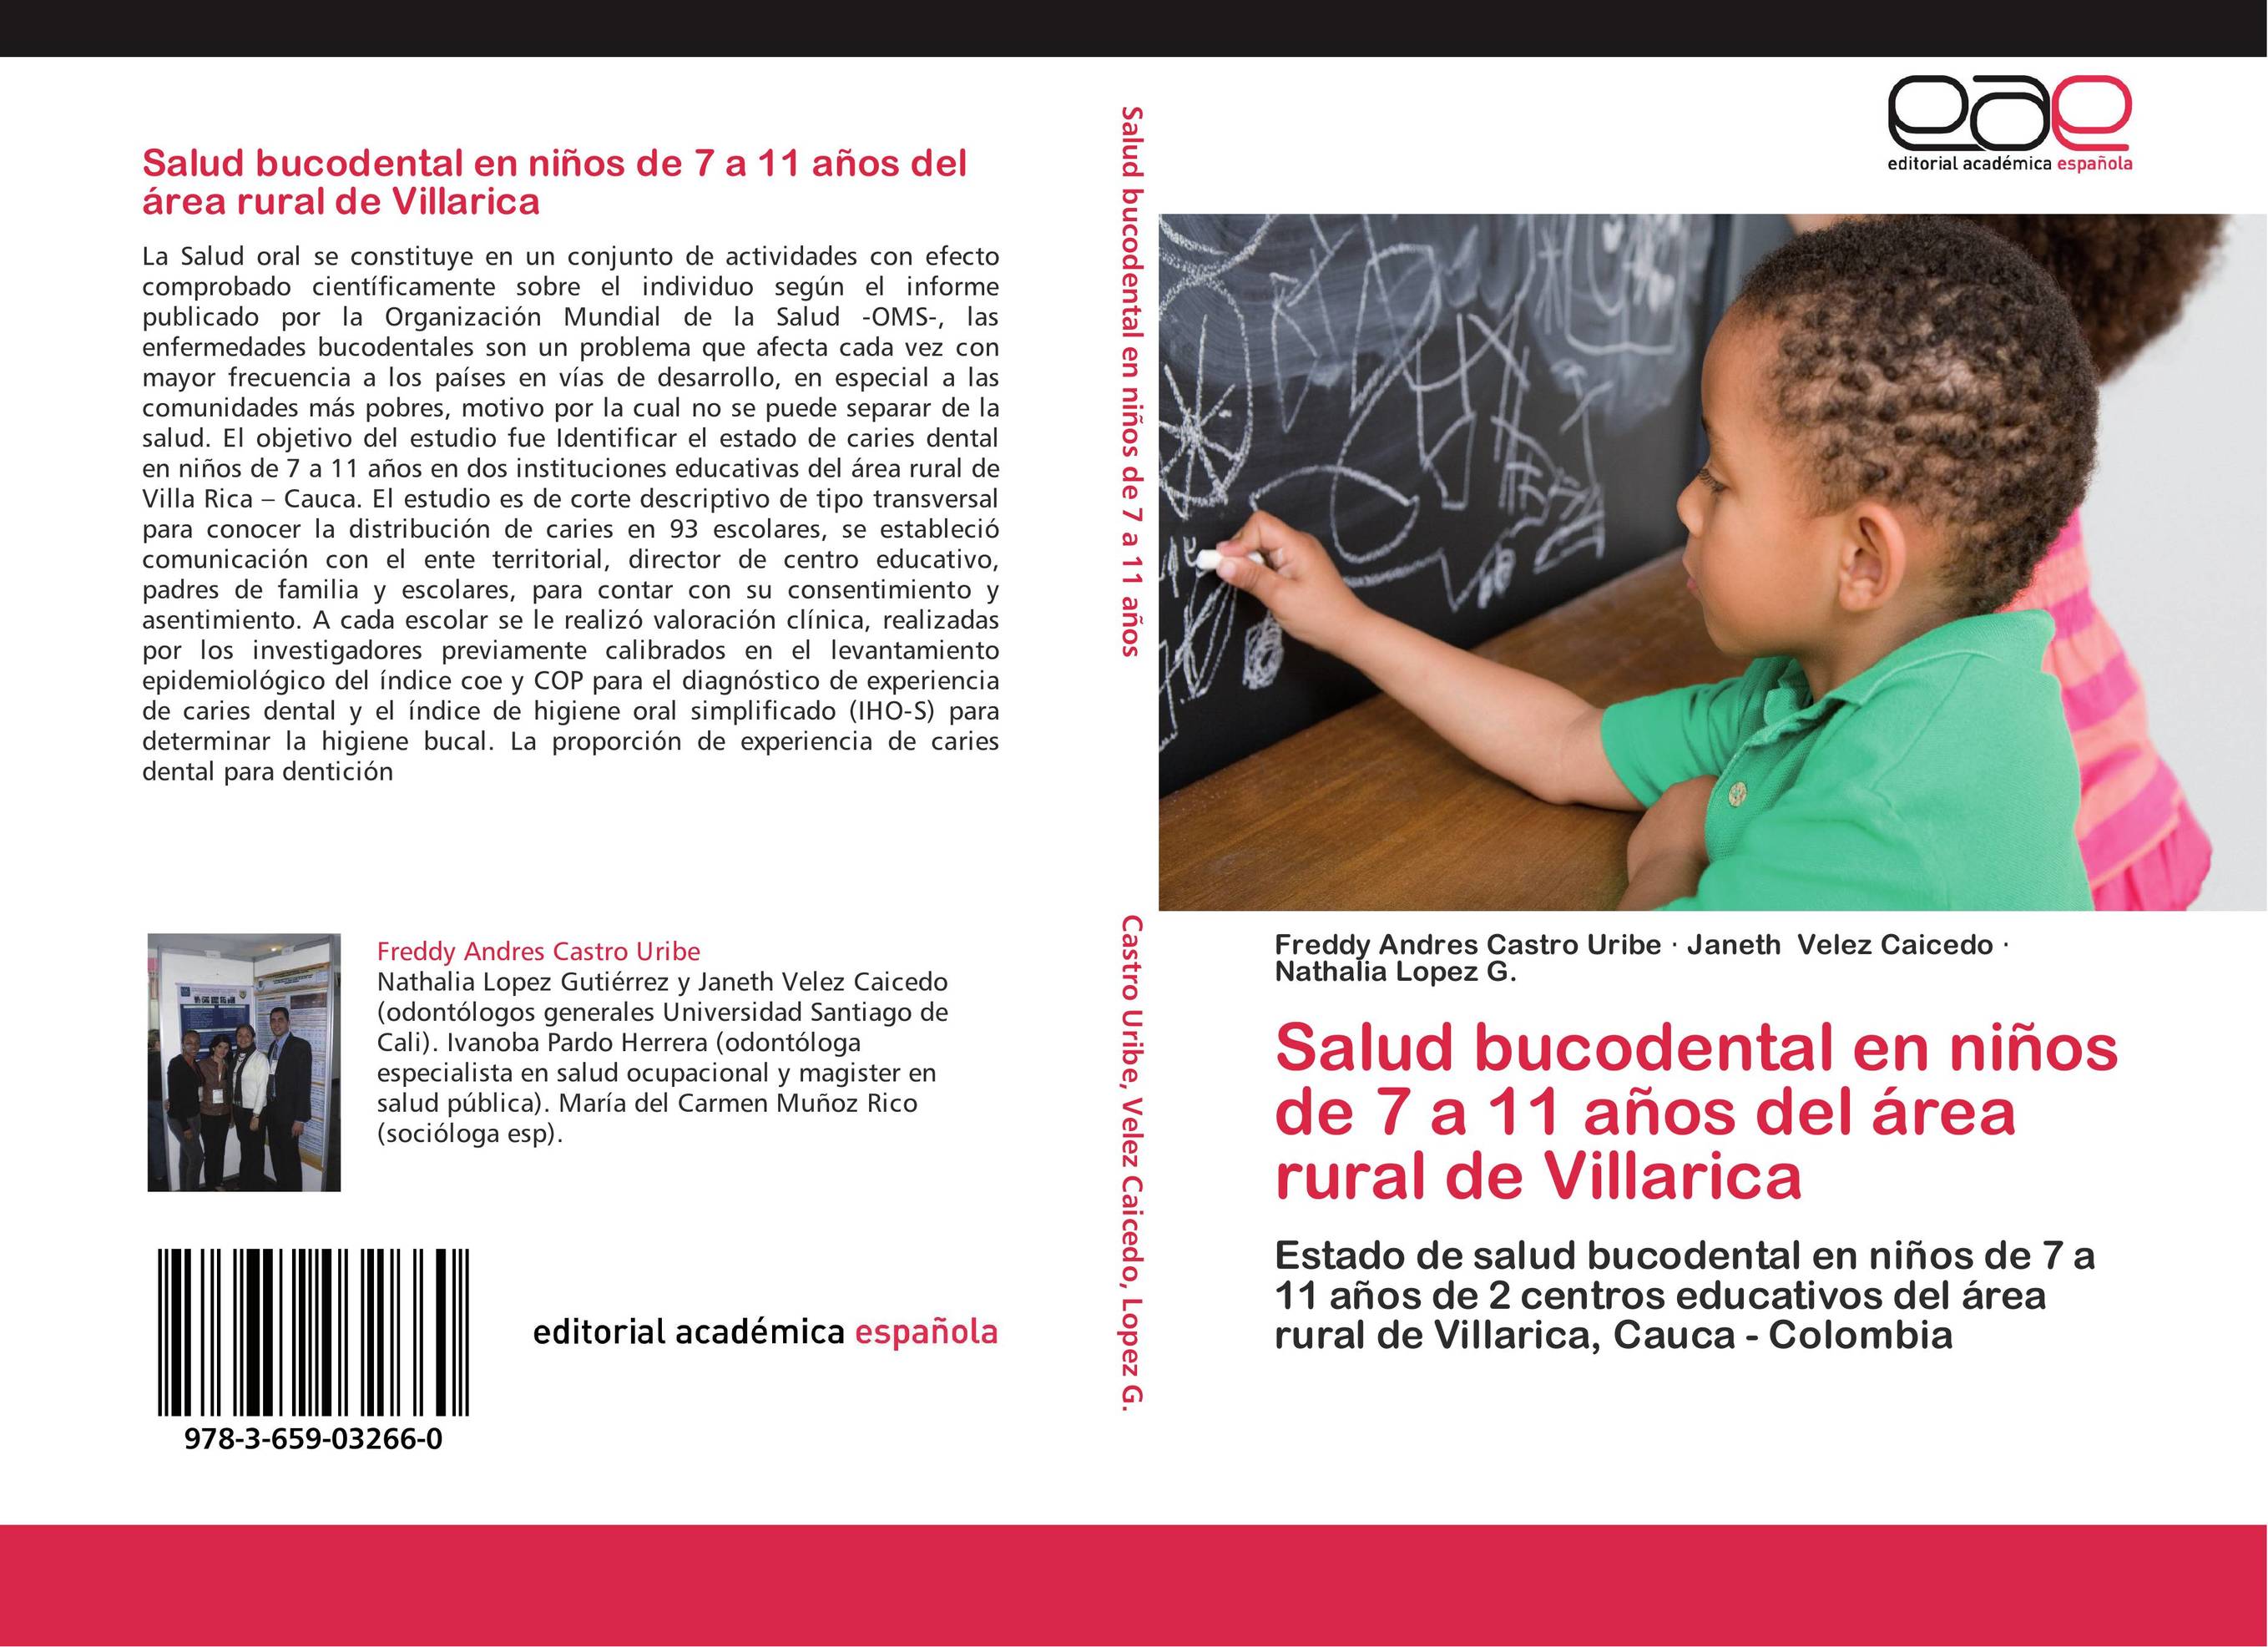 Salud bucodental en niños de 7 a 11 años del área rural de Villarica